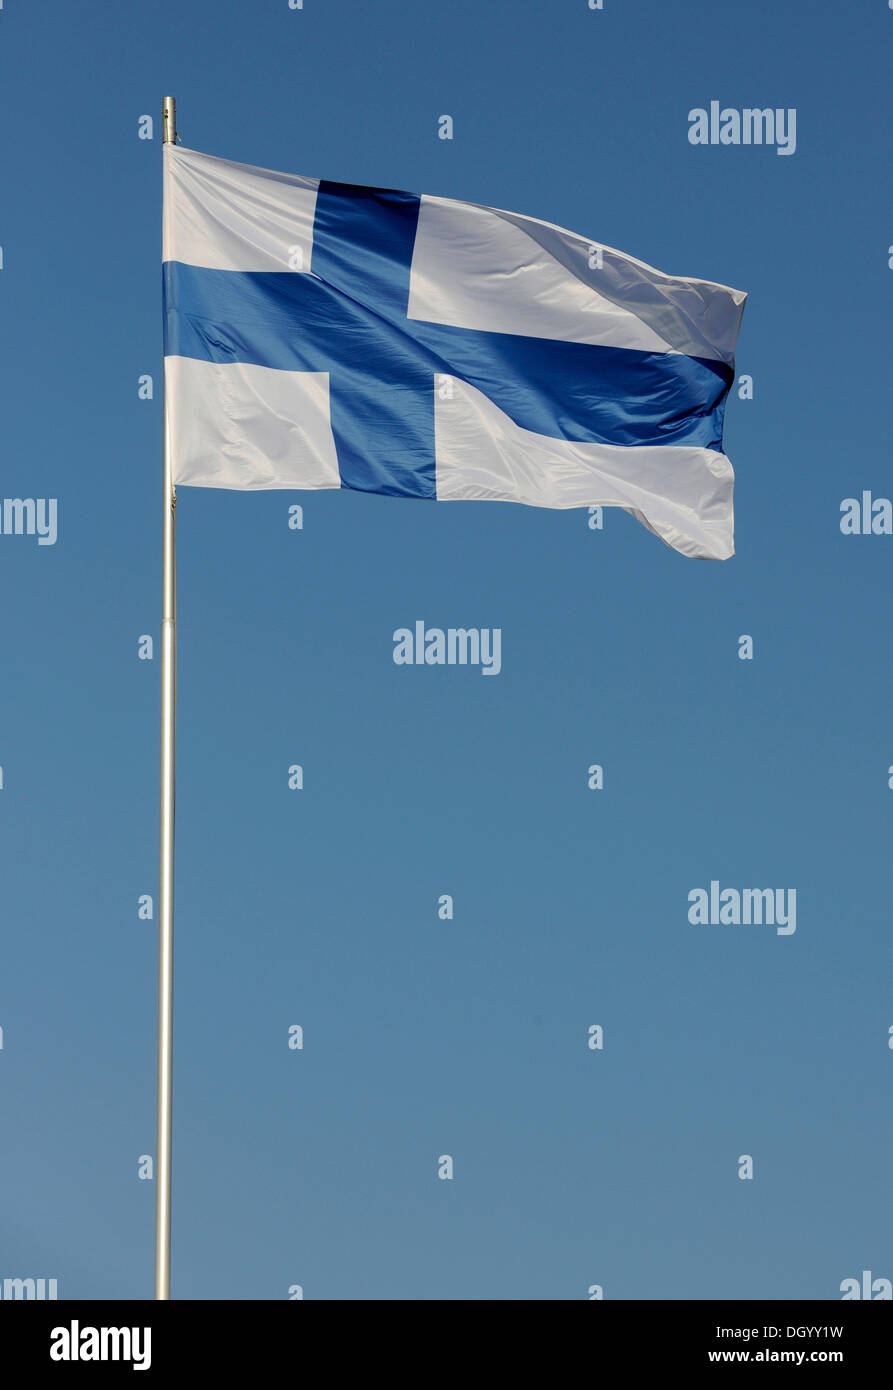 Drapeau national de la Finlande au vent, Finlande, Europe Banque D'Images